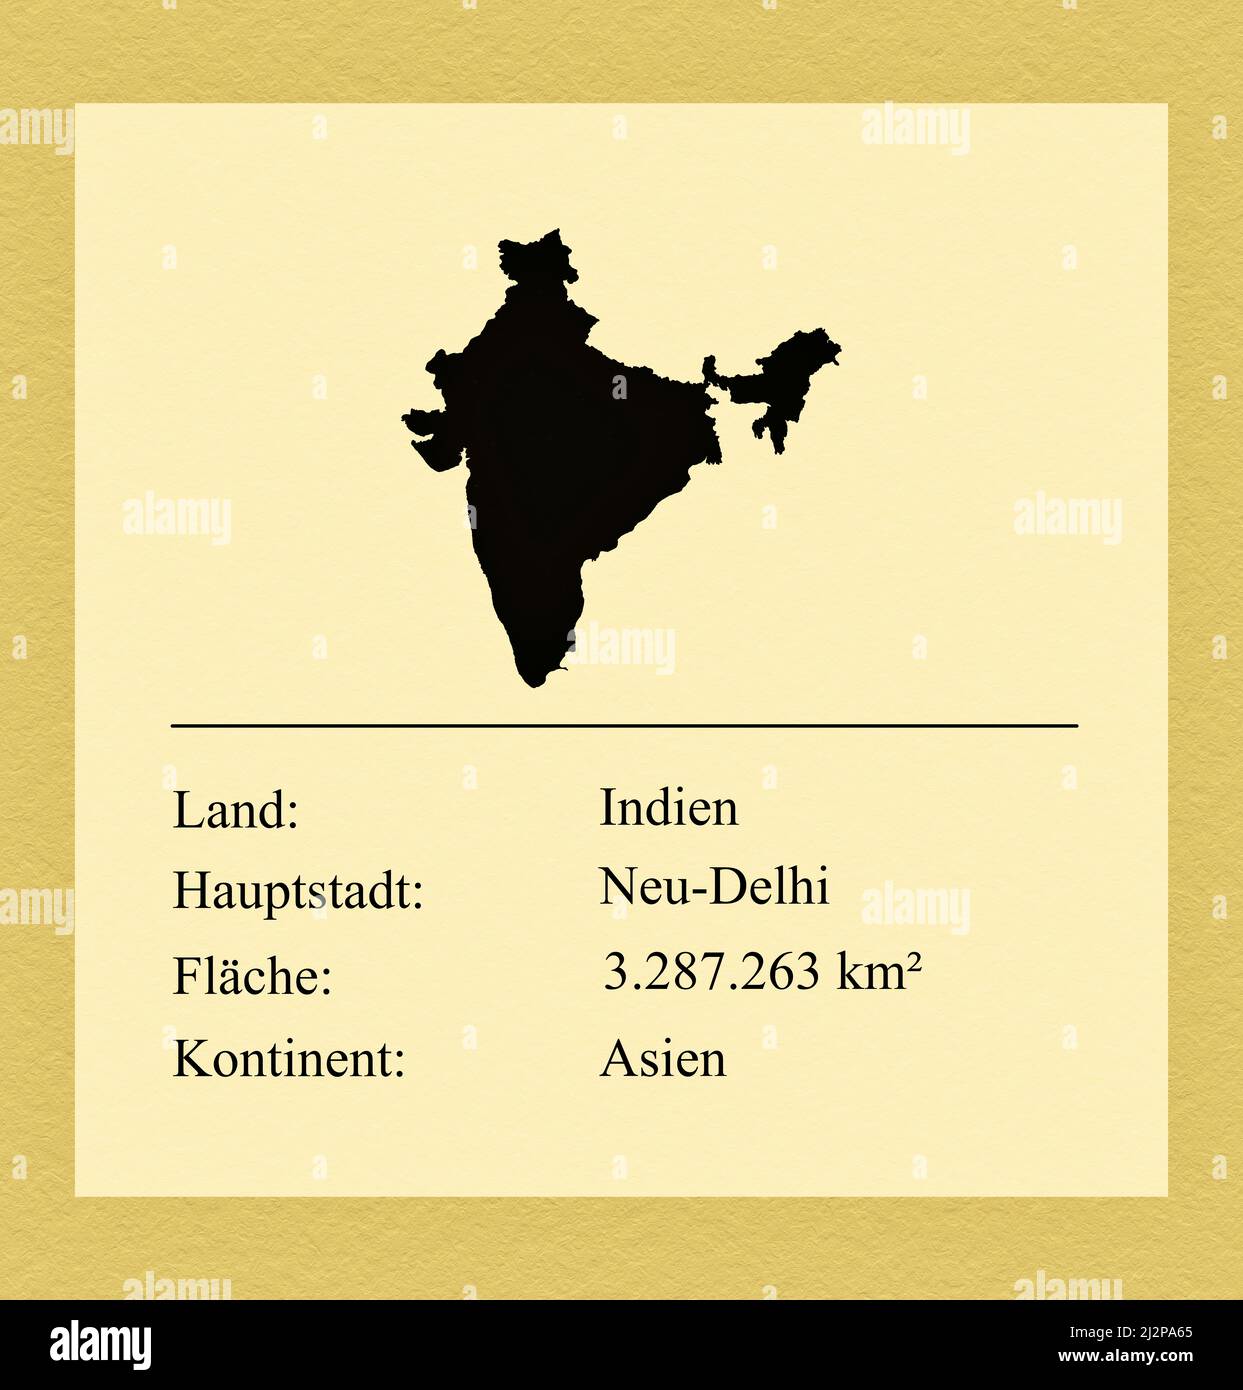 Umrisse des Landes Indien, darunter ein kleiner Steckbrief mit Ländernamen, Hauptstadt, Fläche und Kontinent Foto de stock